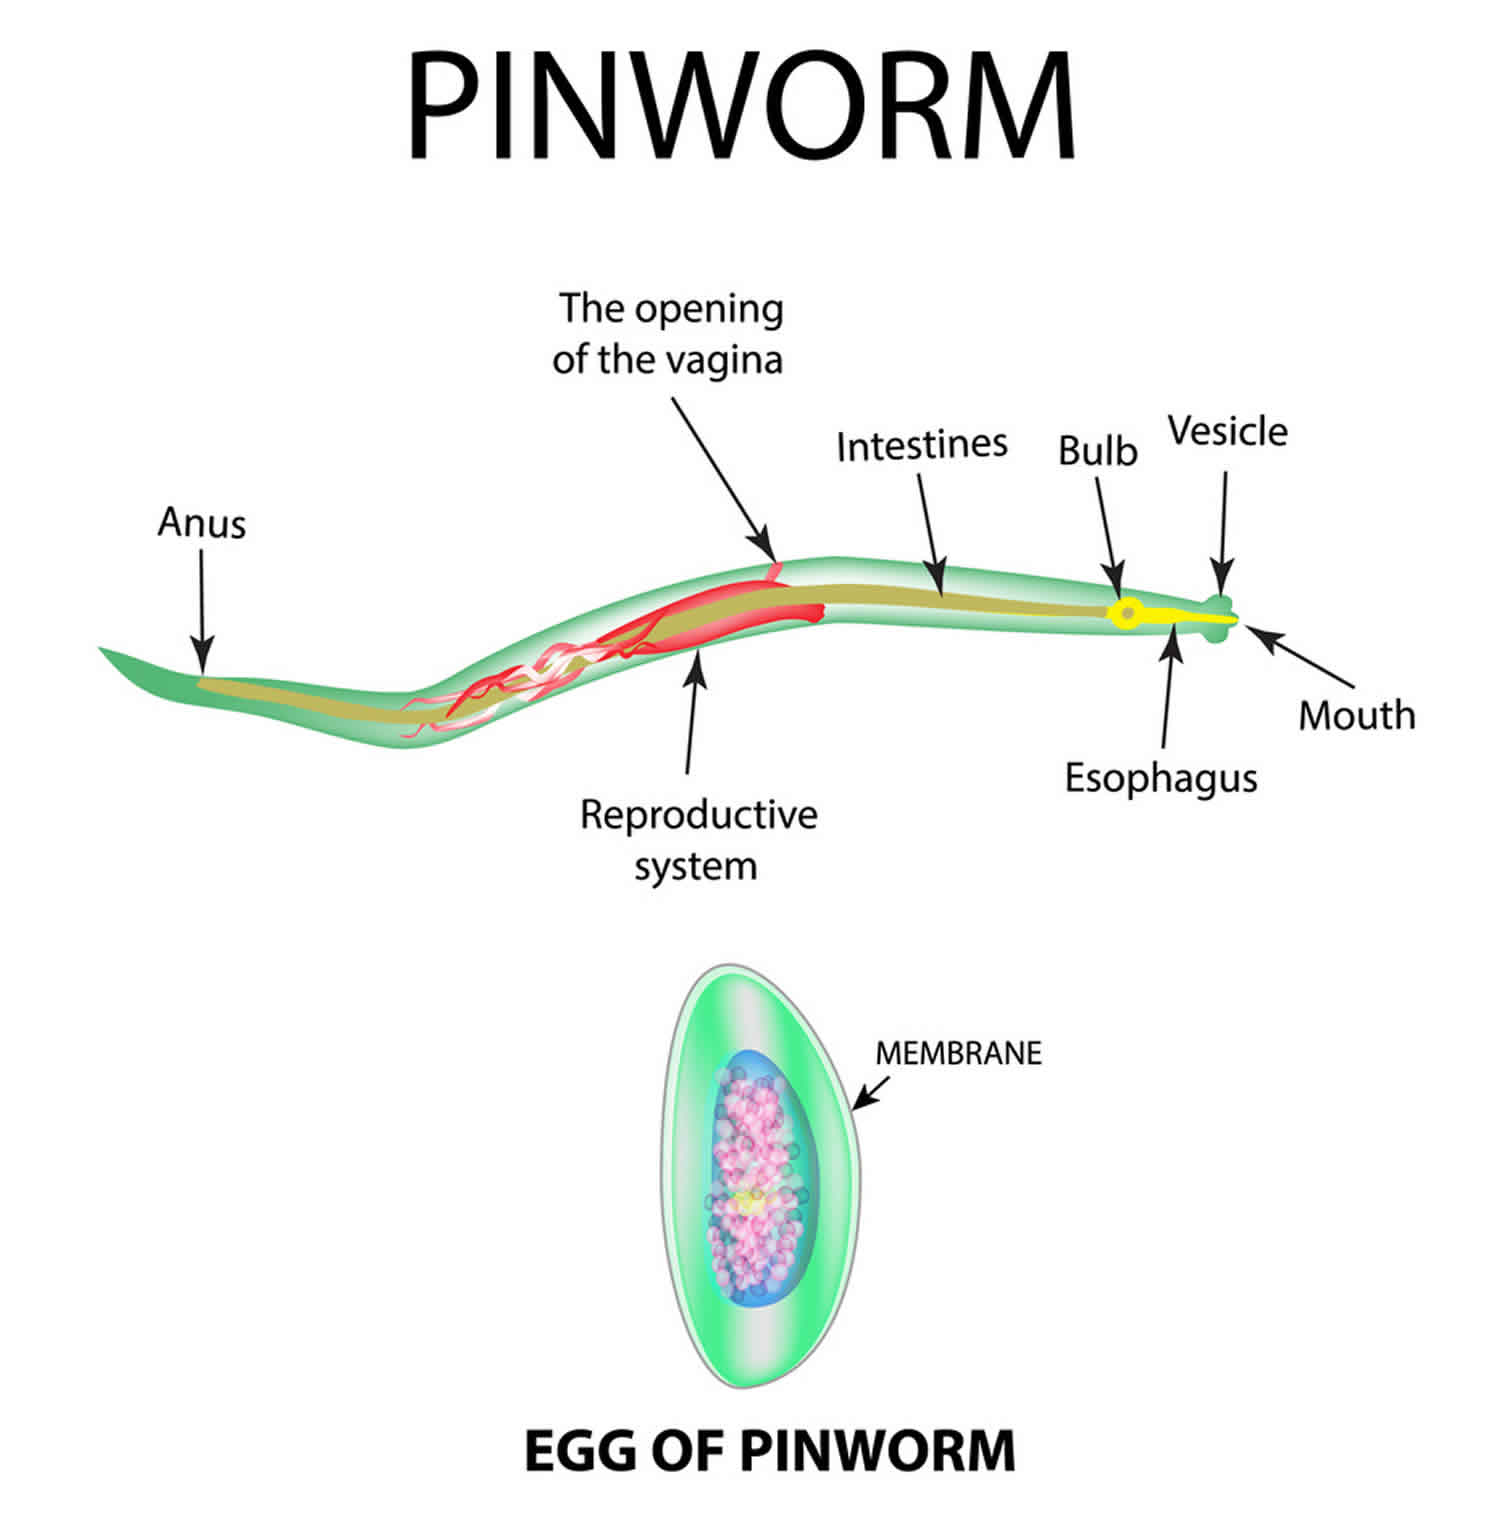 enterobiasis or pinworm